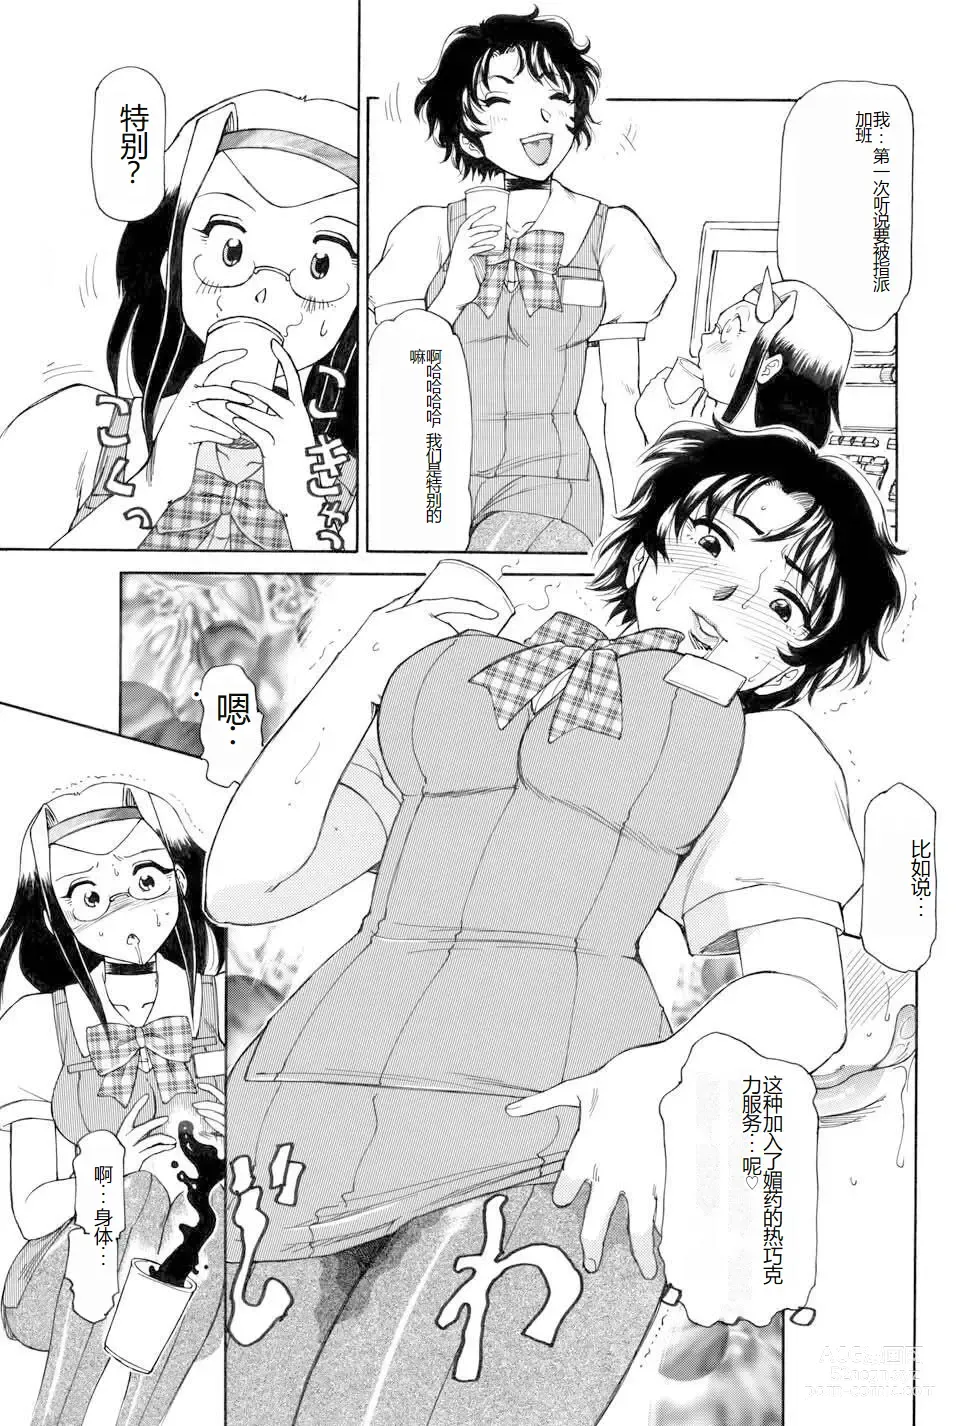 Page 7 of manga Kochira Soumubu Niku Houshika